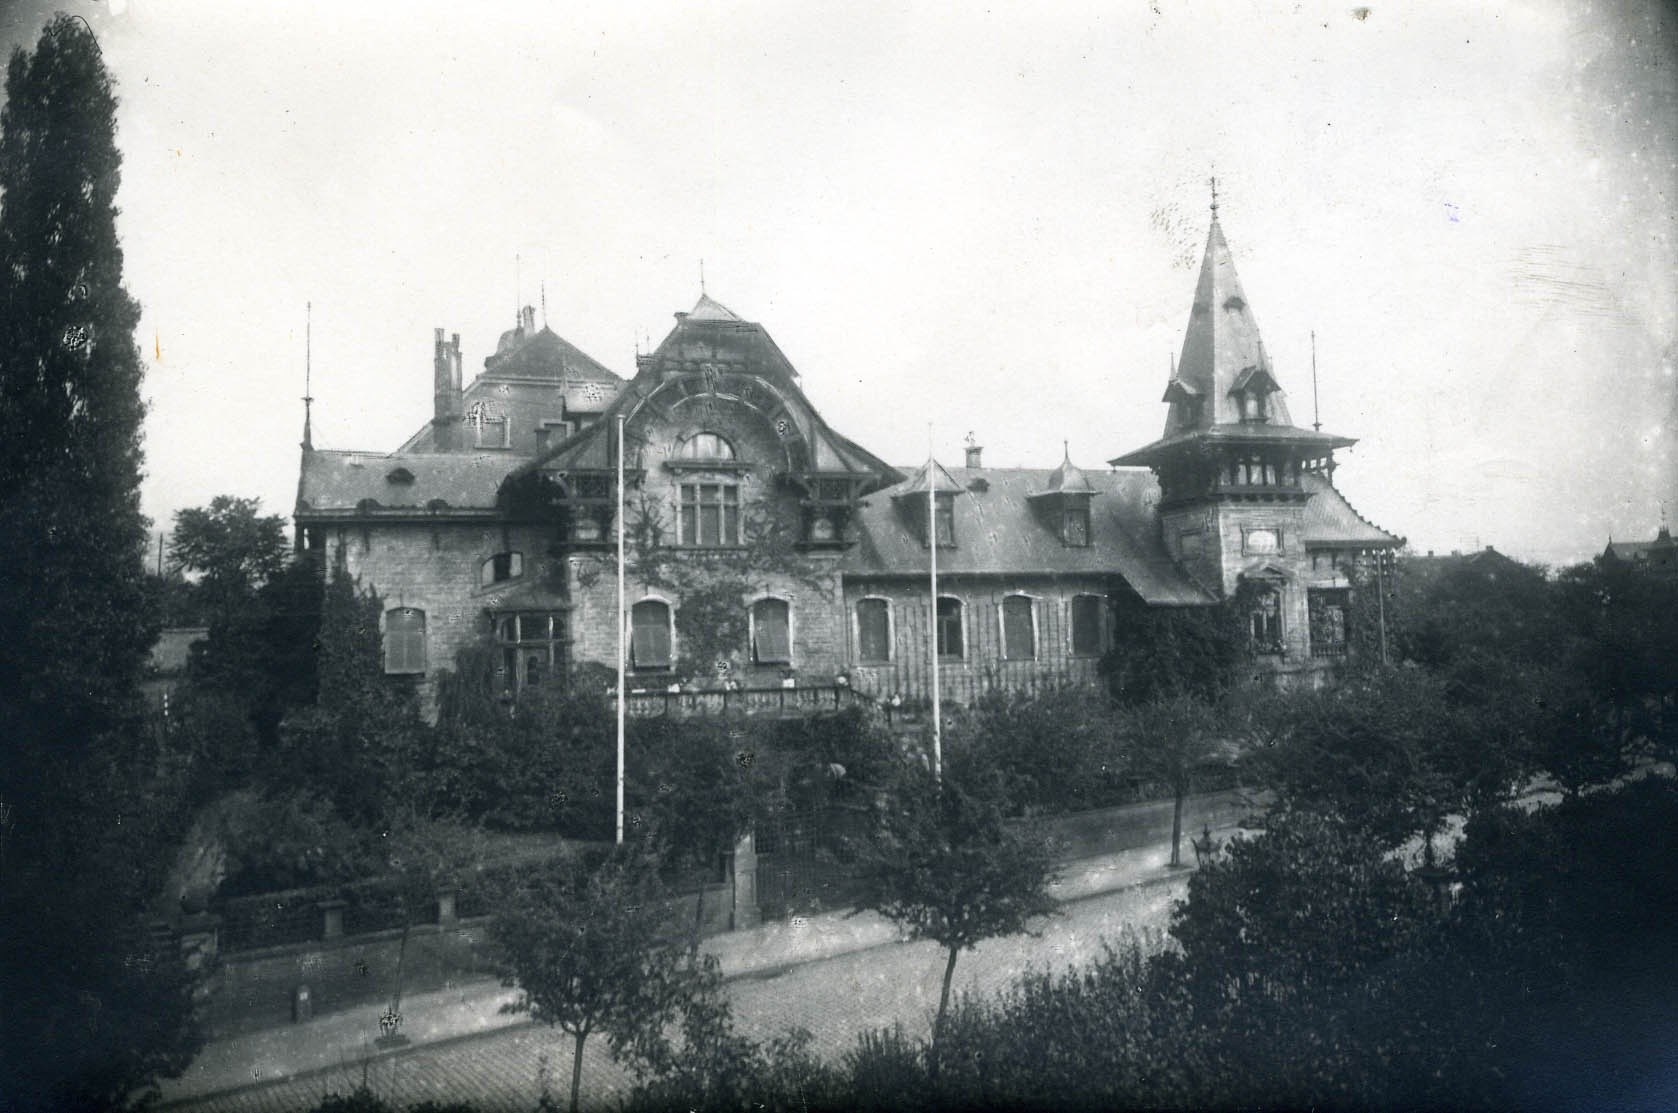 Fotografie "Vereinslazarett V, Neustadt a.d.W." (Historisches Museum der Pfalz, Speyer CC BY)